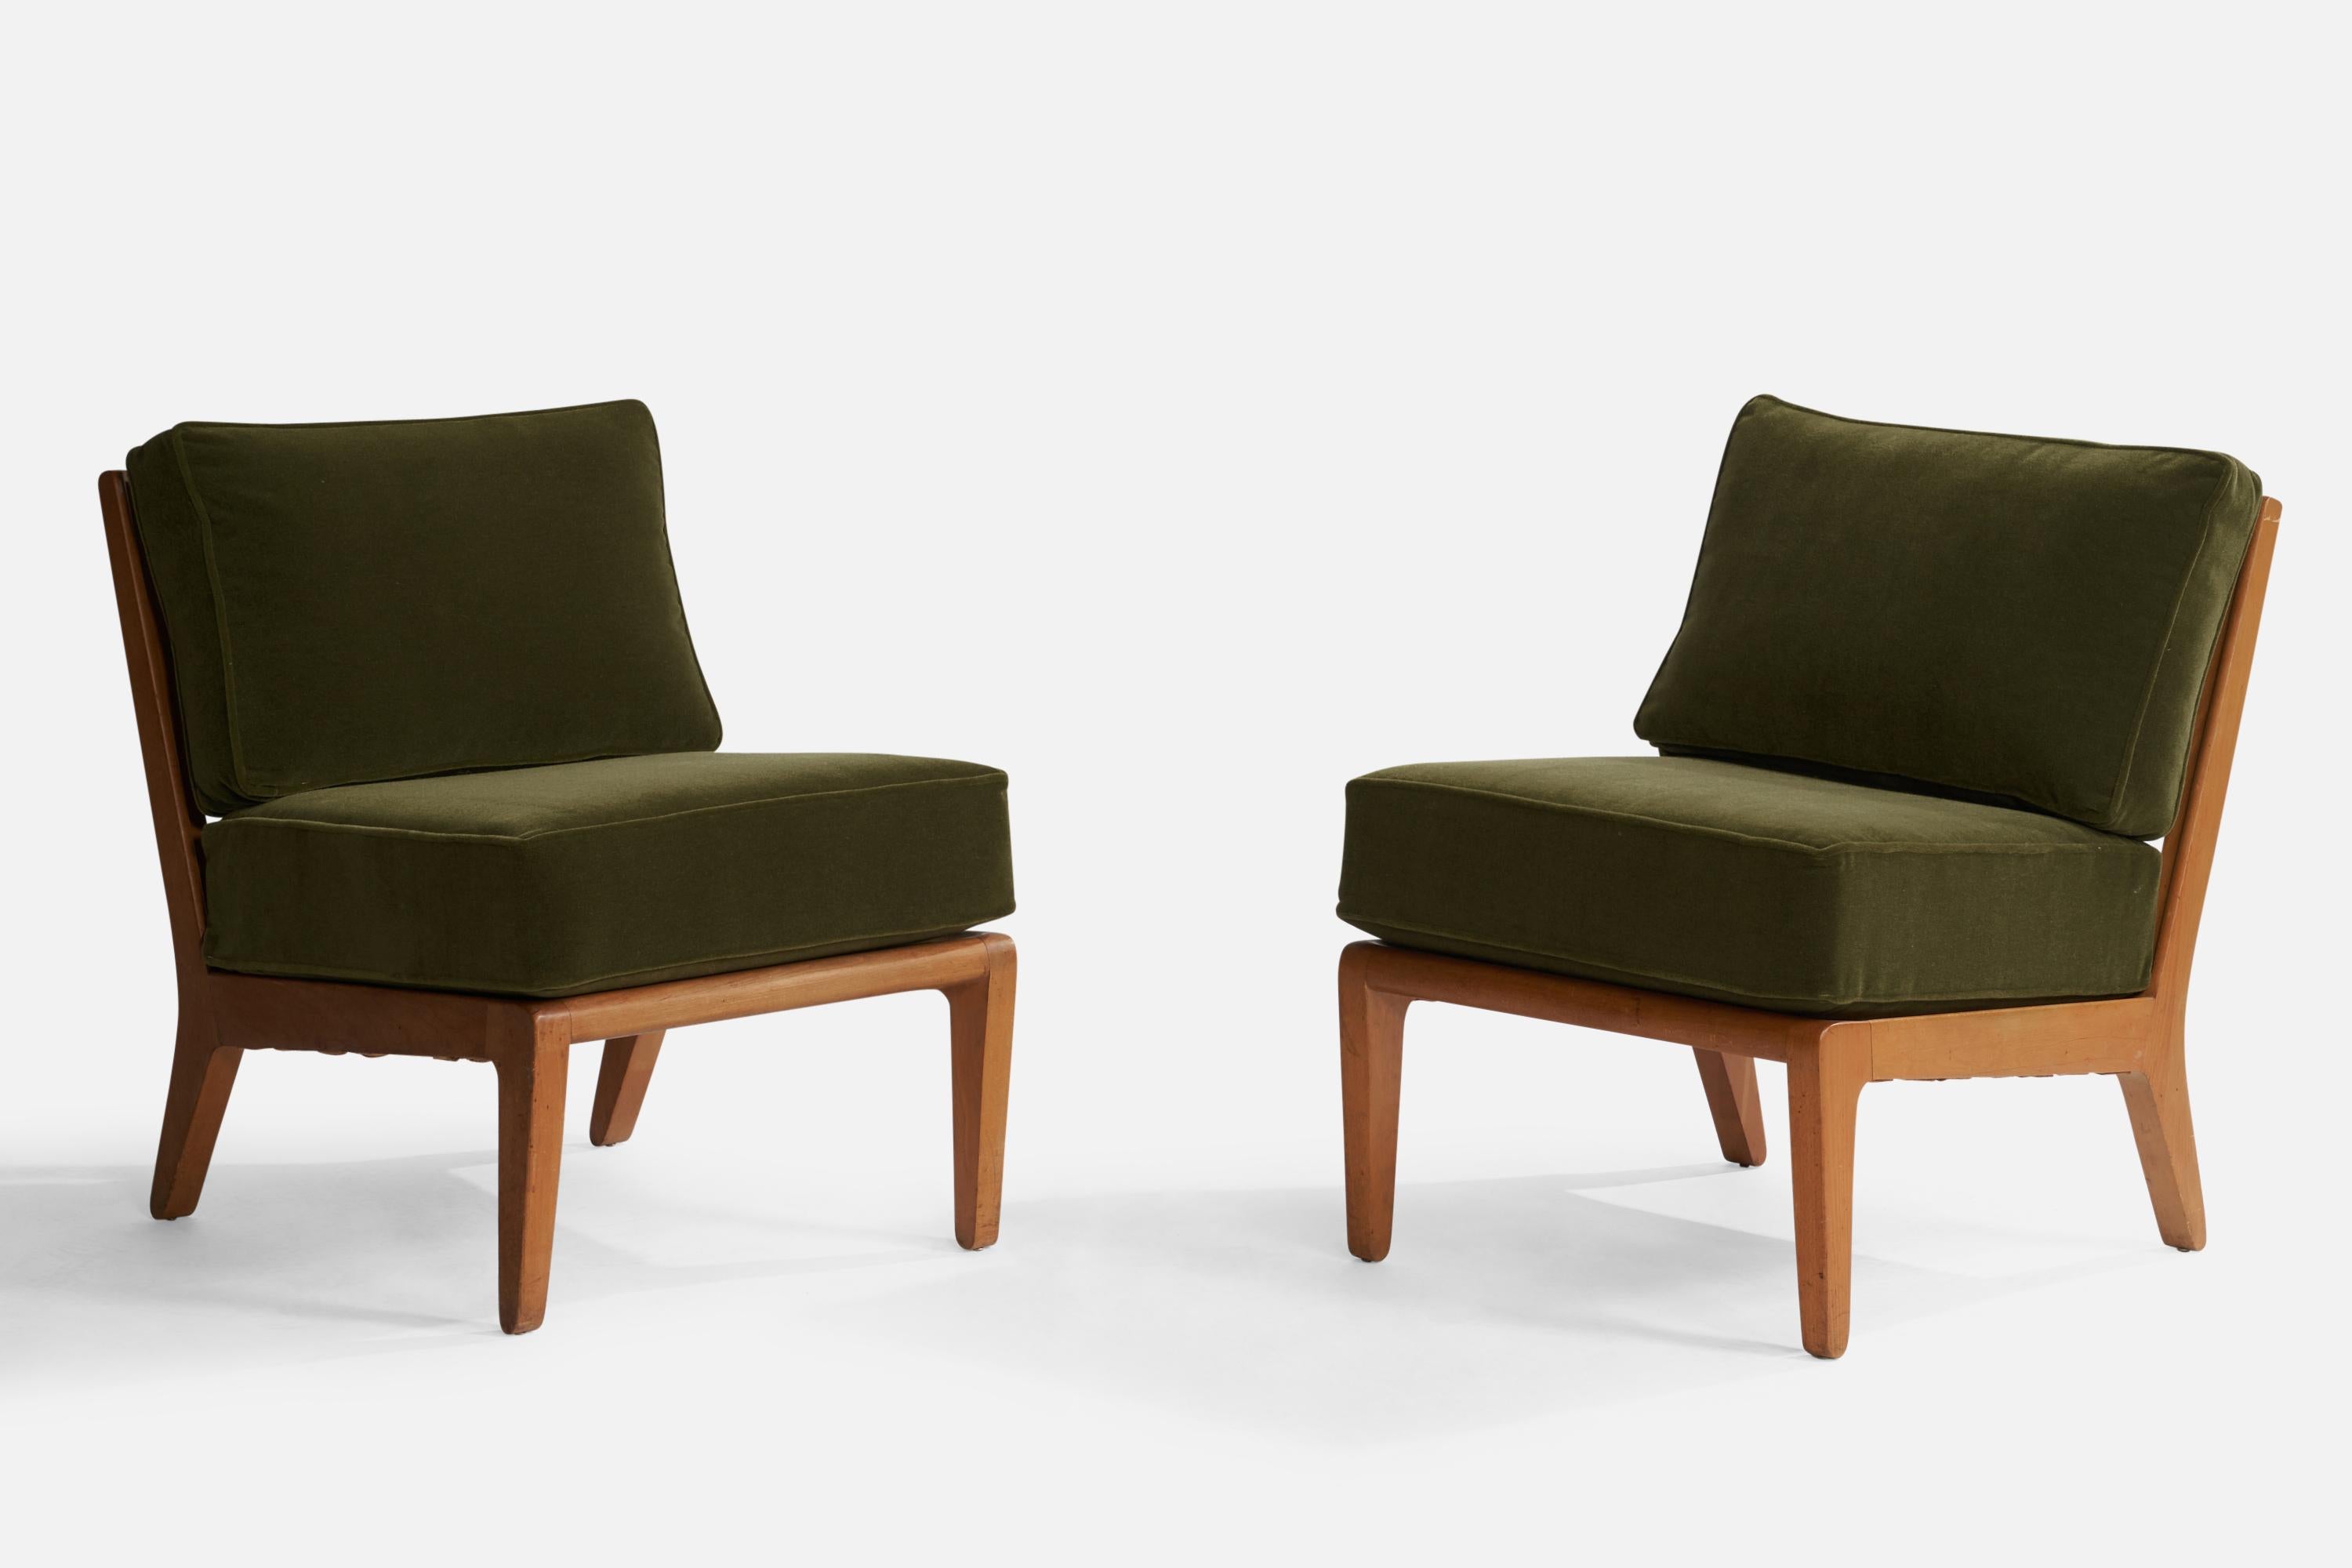 Paire de chaises longues en hêtre et mohair vert conçues par Edward Wormley et produites par Drexel, États-Unis, années 1950.

Hauteur du siège : 20.5